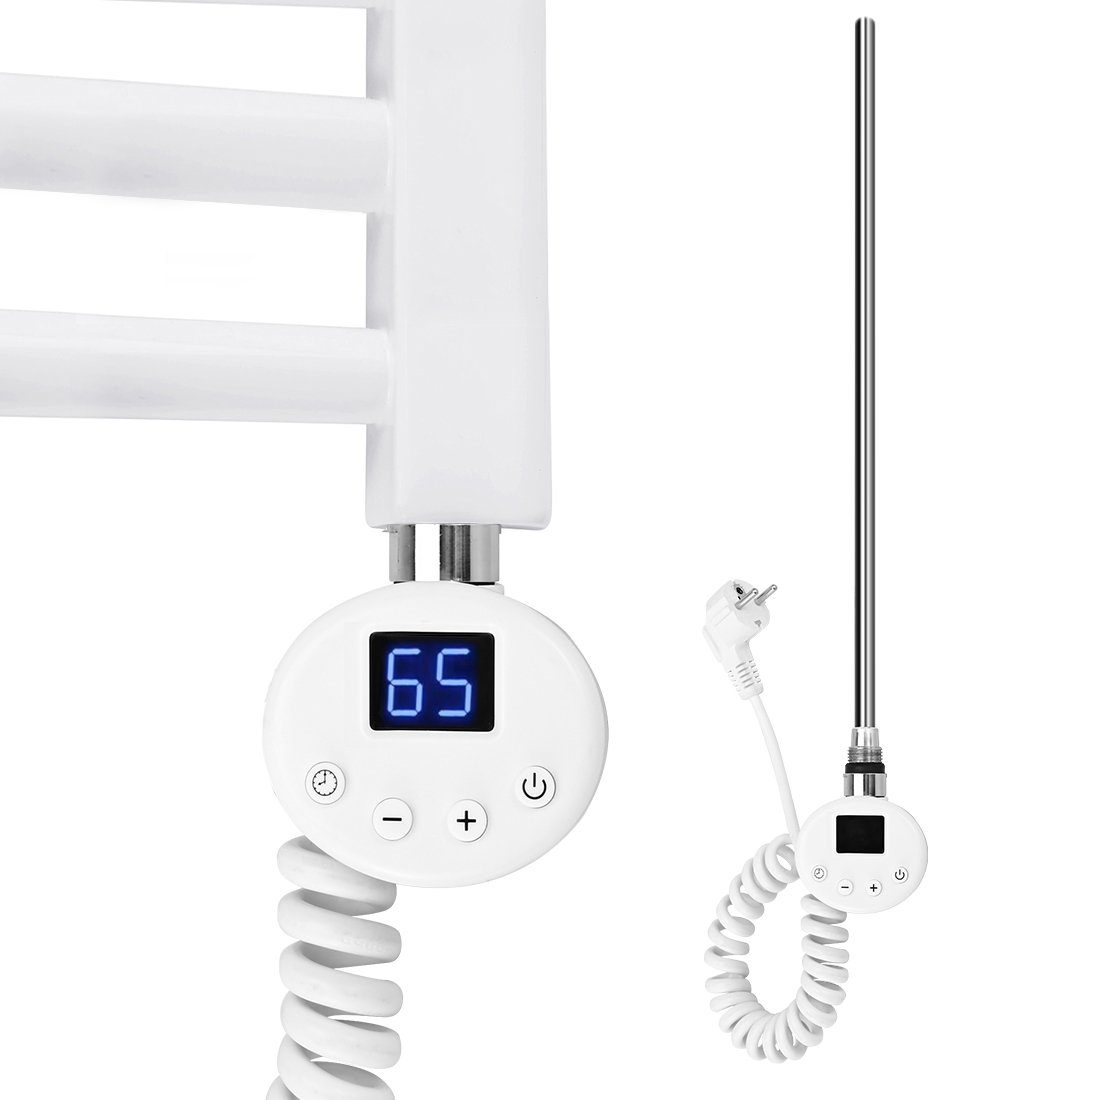 S'AFIELINA für Heizstab Badheizkörper, Weiß mit Edelstahl digitalem Thermostat Heizpatrone